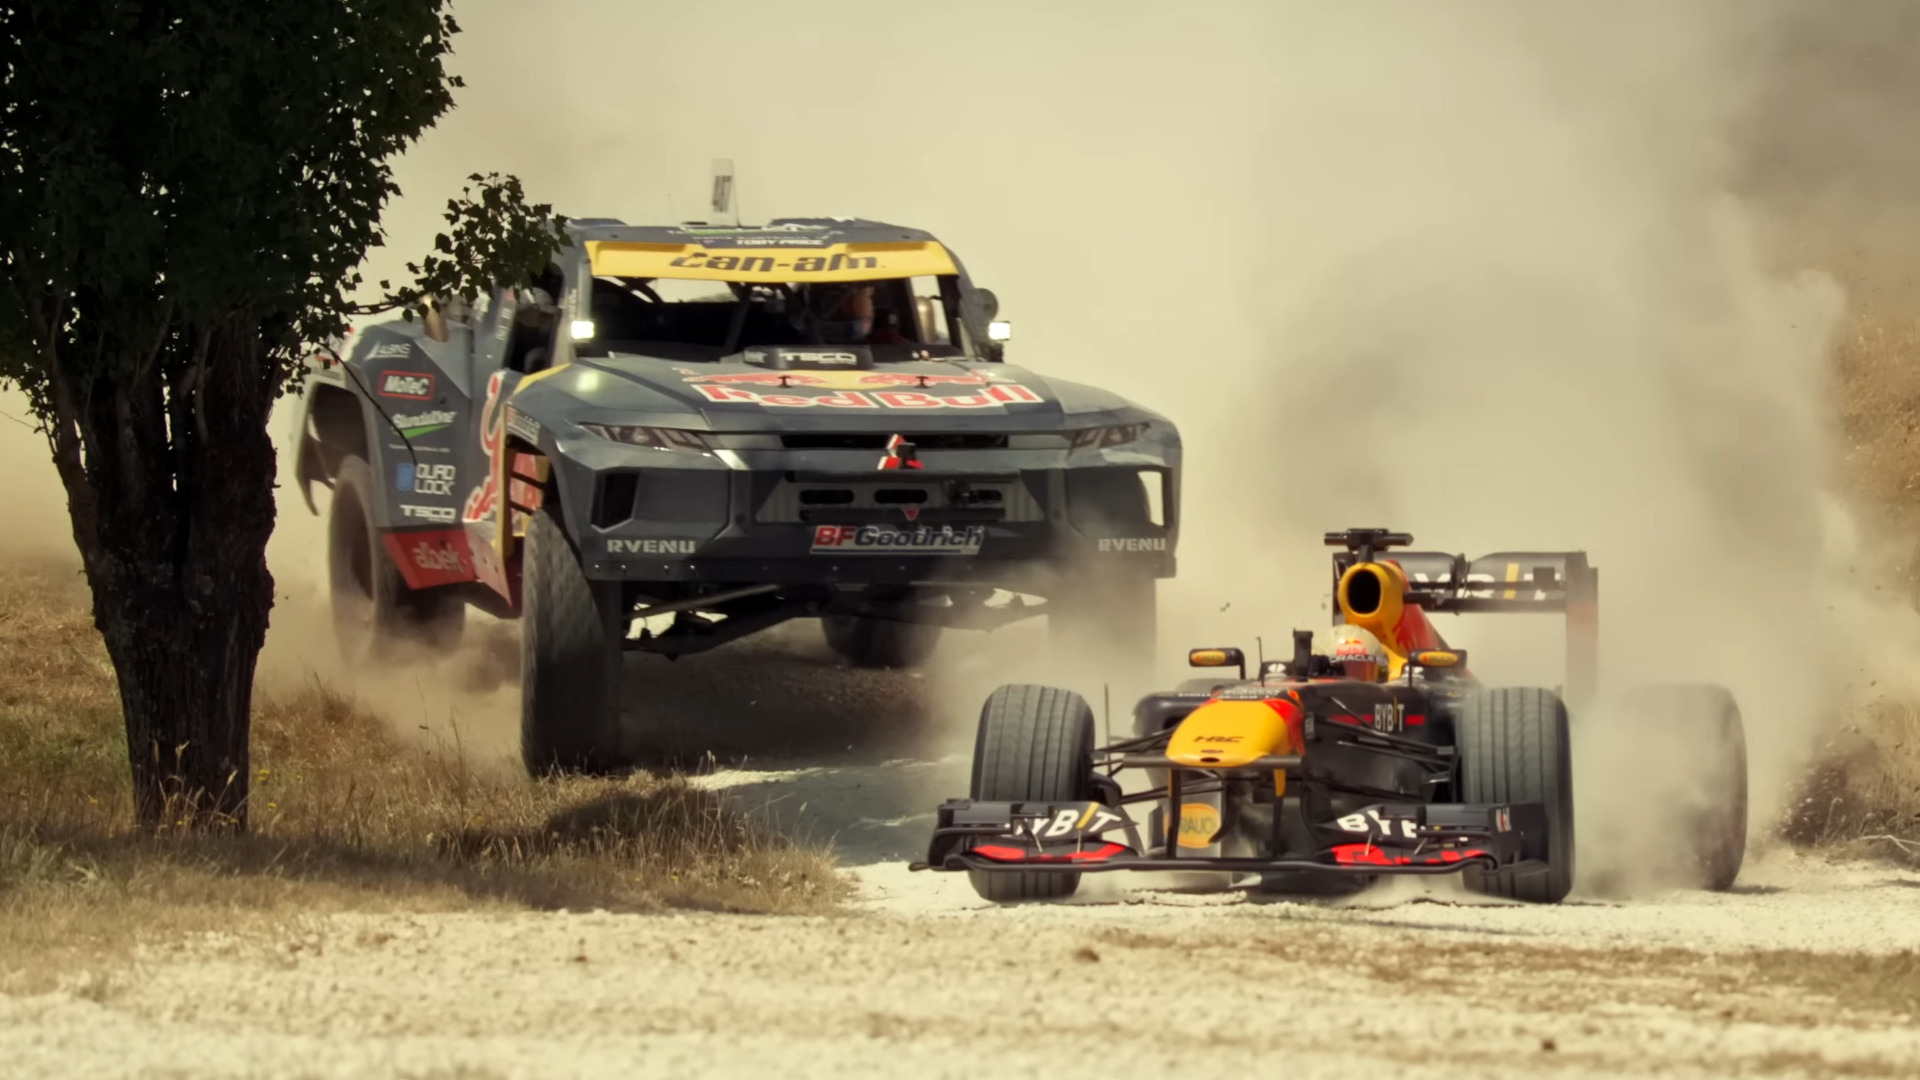 Watch Ricciardo Drift an F1 Car on Dirt in Red Bull’s Great Aussie Road Trip